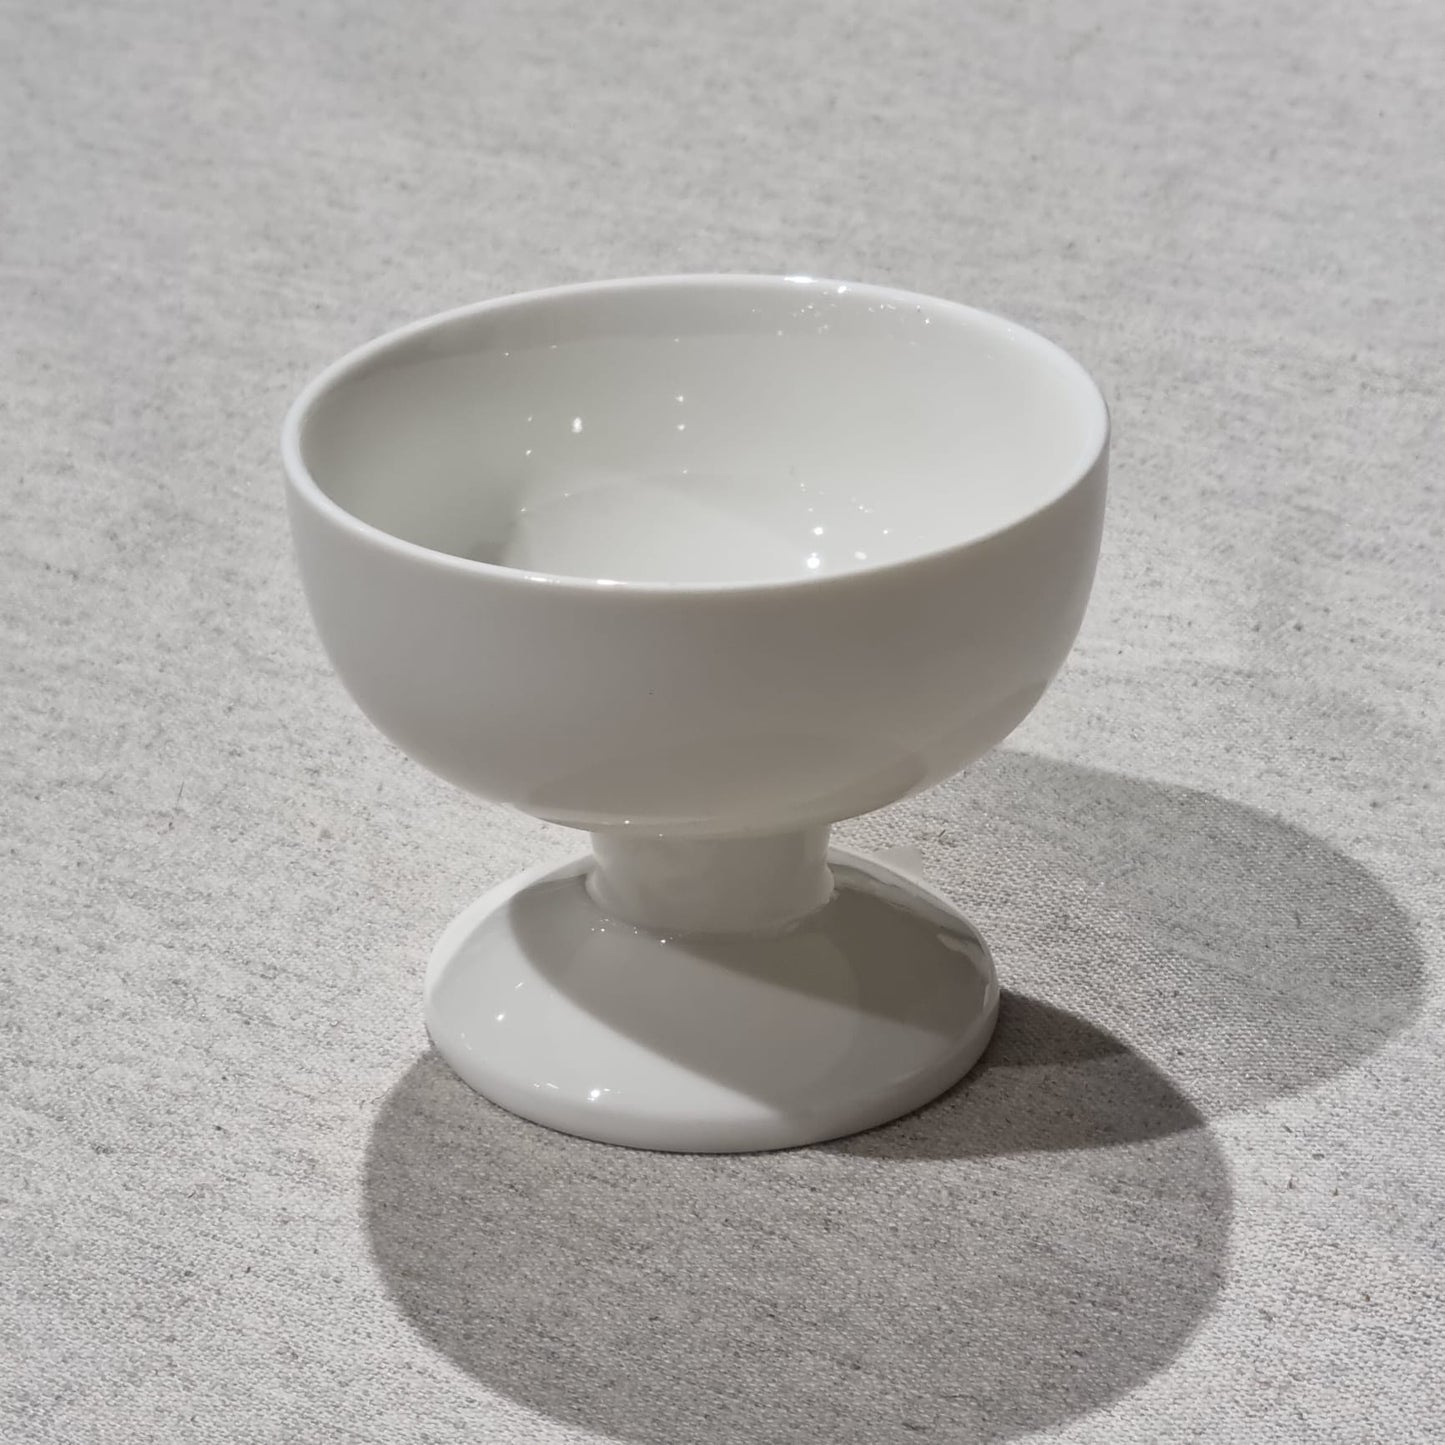 Deserta trauks uz kājas no Toskānas baltā porcelāna kolekcijas